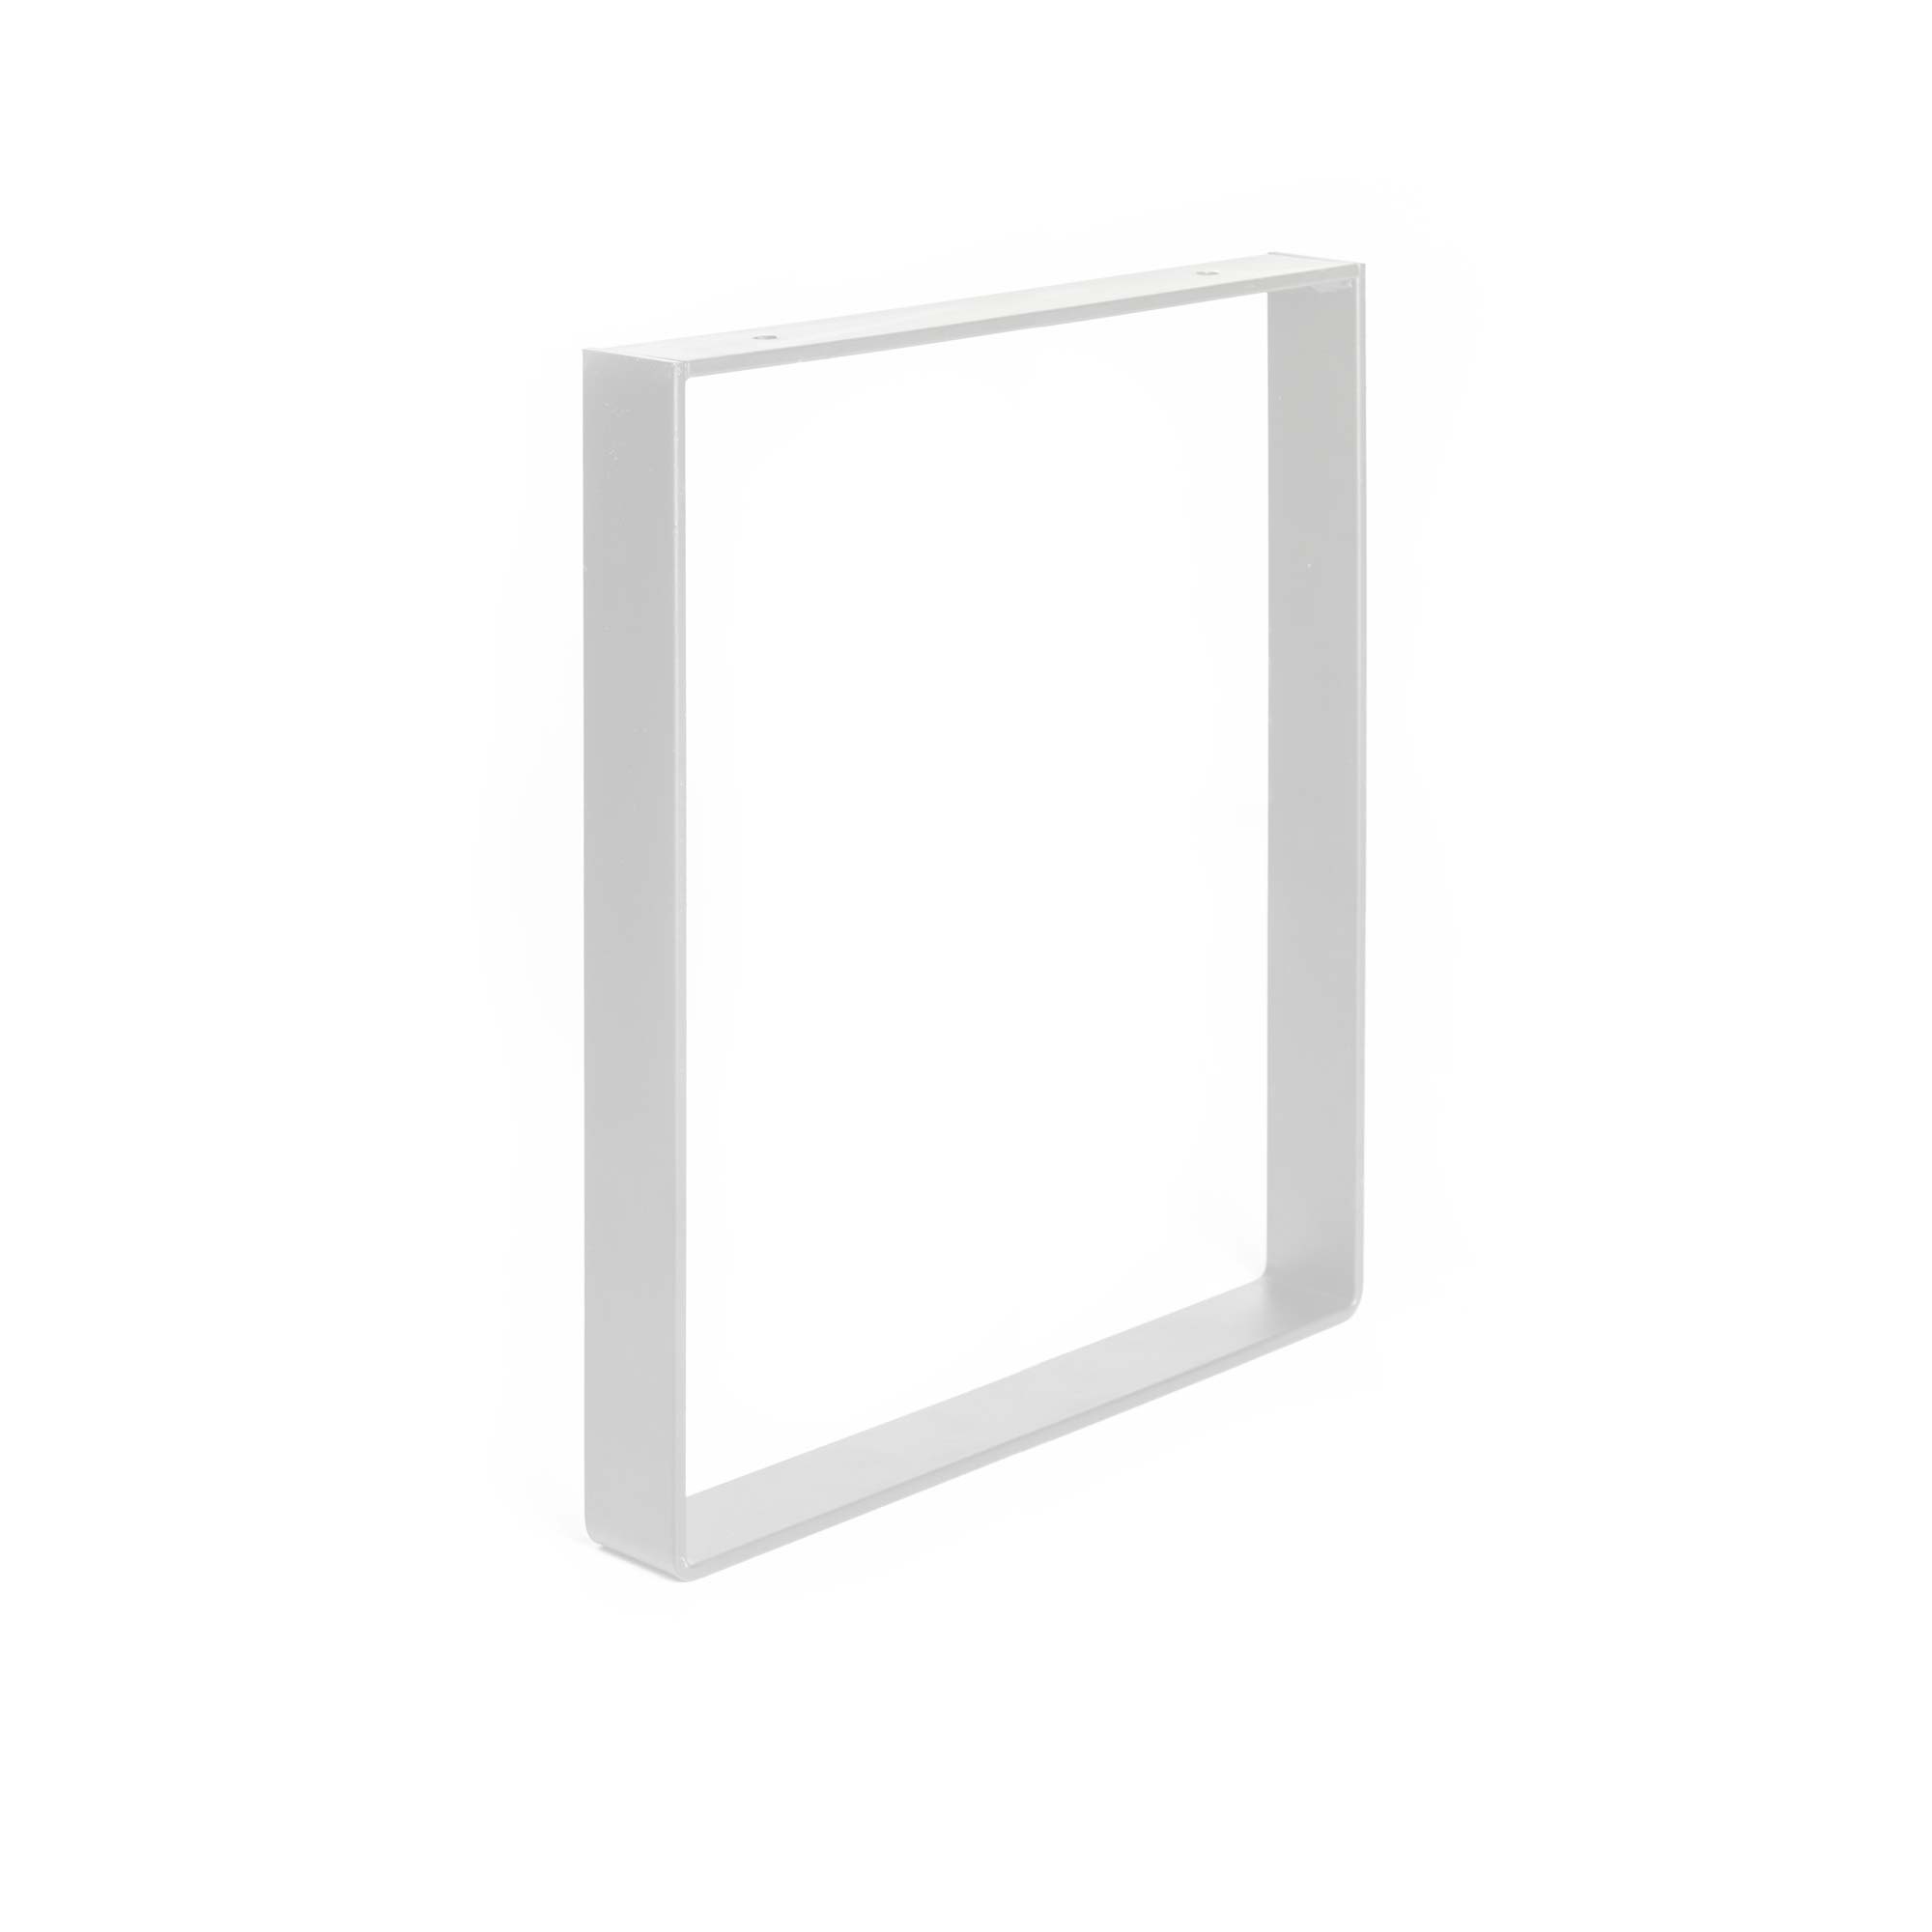 Pata Industrial para Muebles en Acero Blanco Poro | Medidas 350*40*385 mm | Altura: 38,5 cm | 1 Unidad